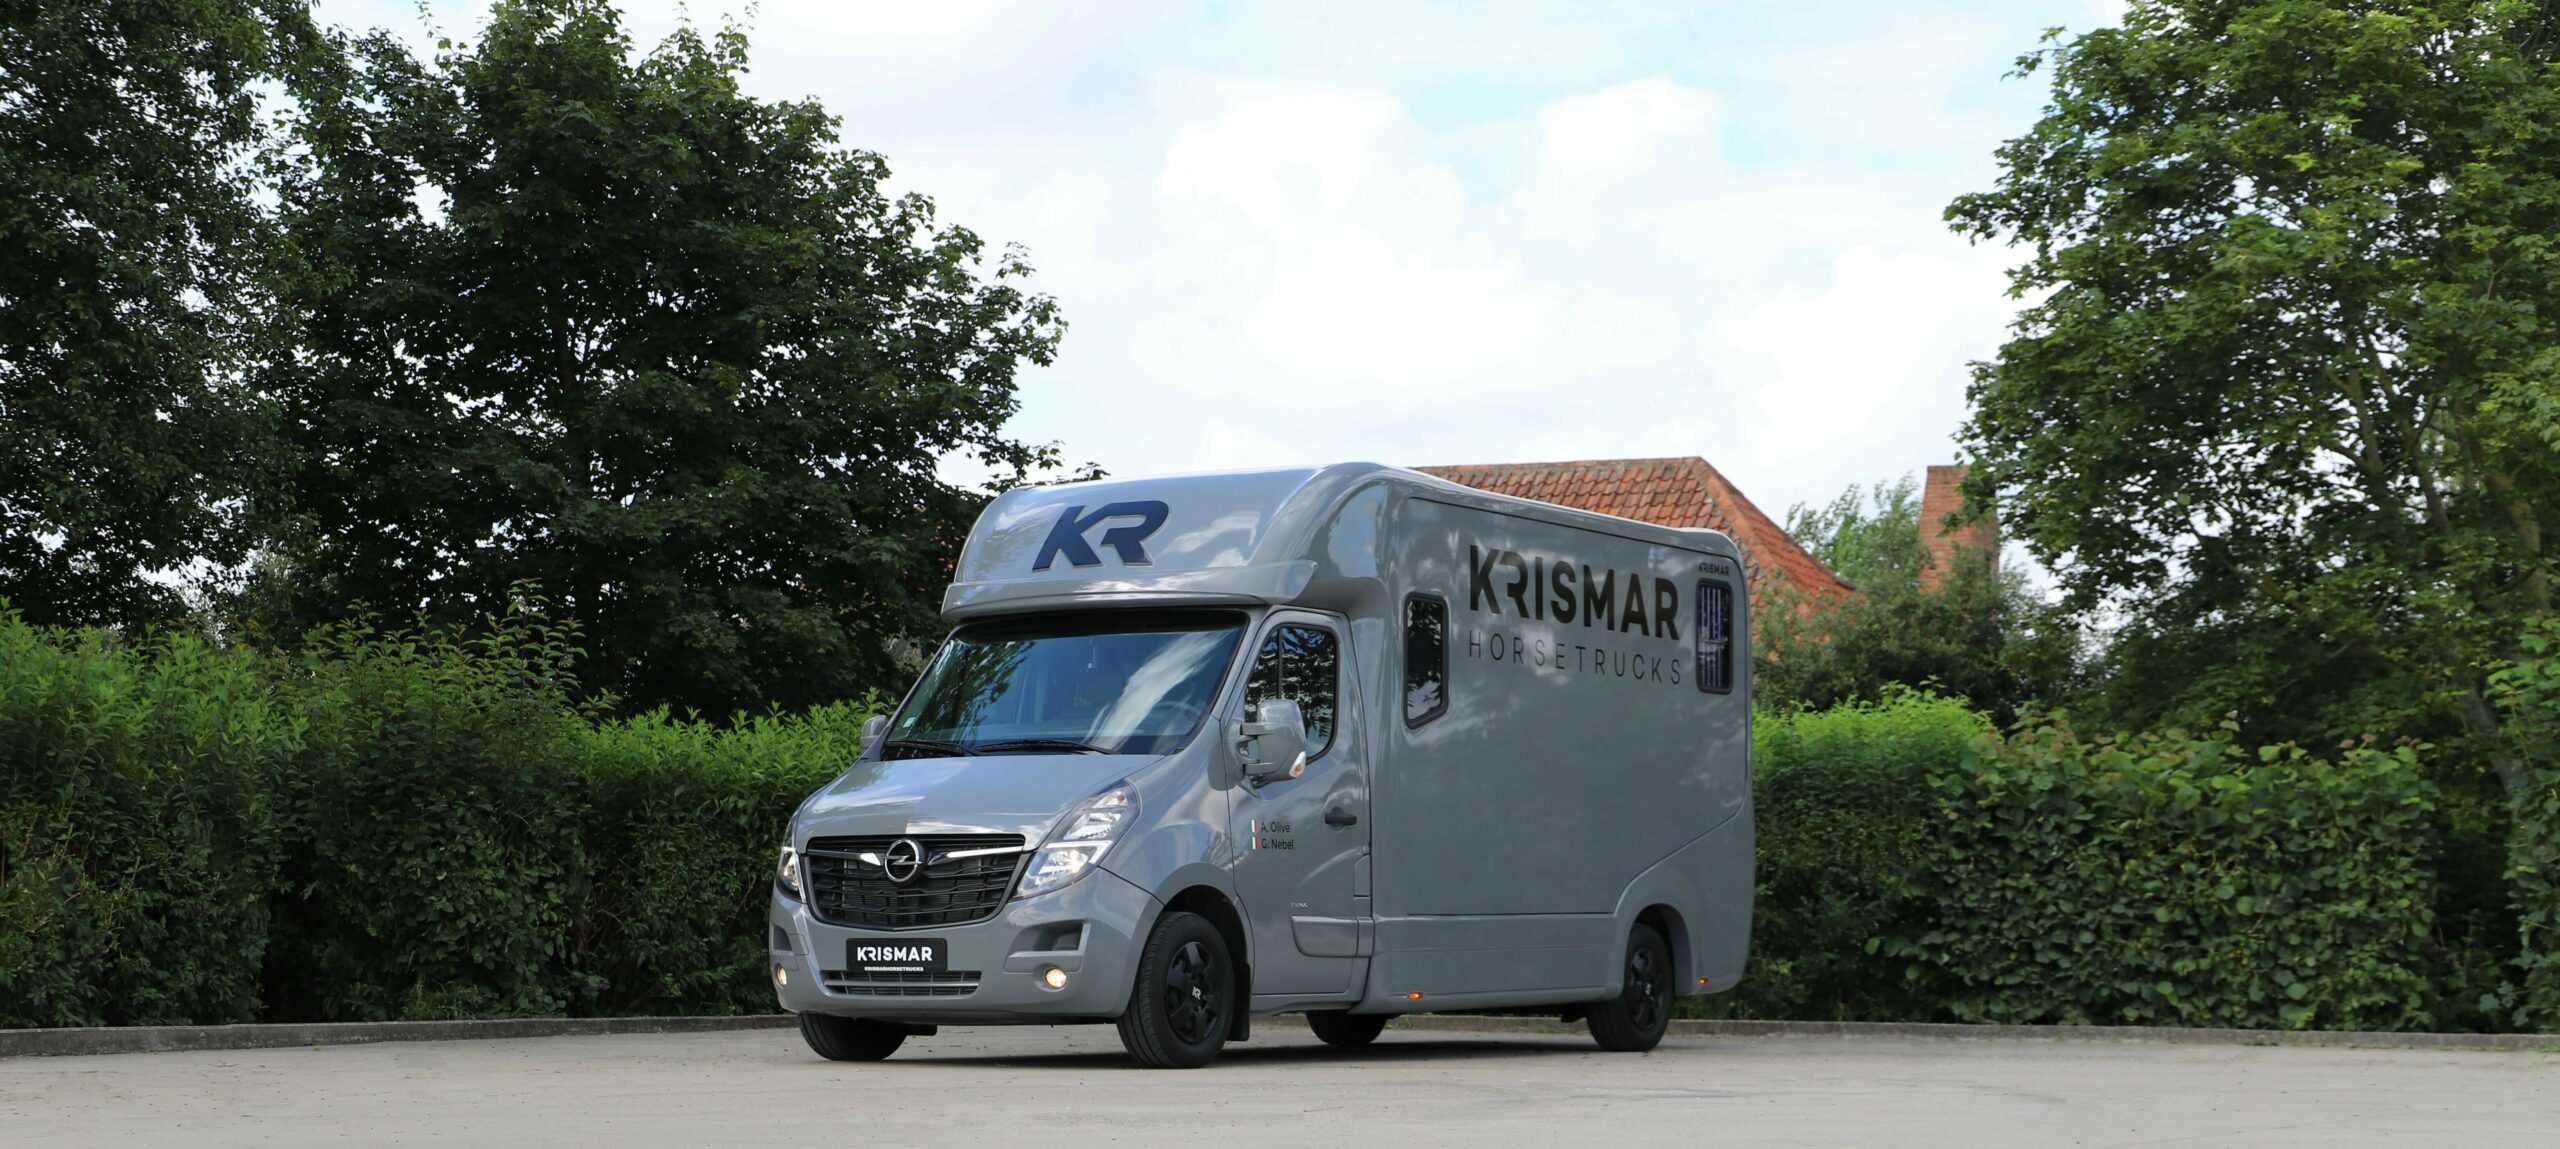 Een grijze Krismar paardenvrachtwagen voor 2 paarden gebouwd op een Opel chassis.